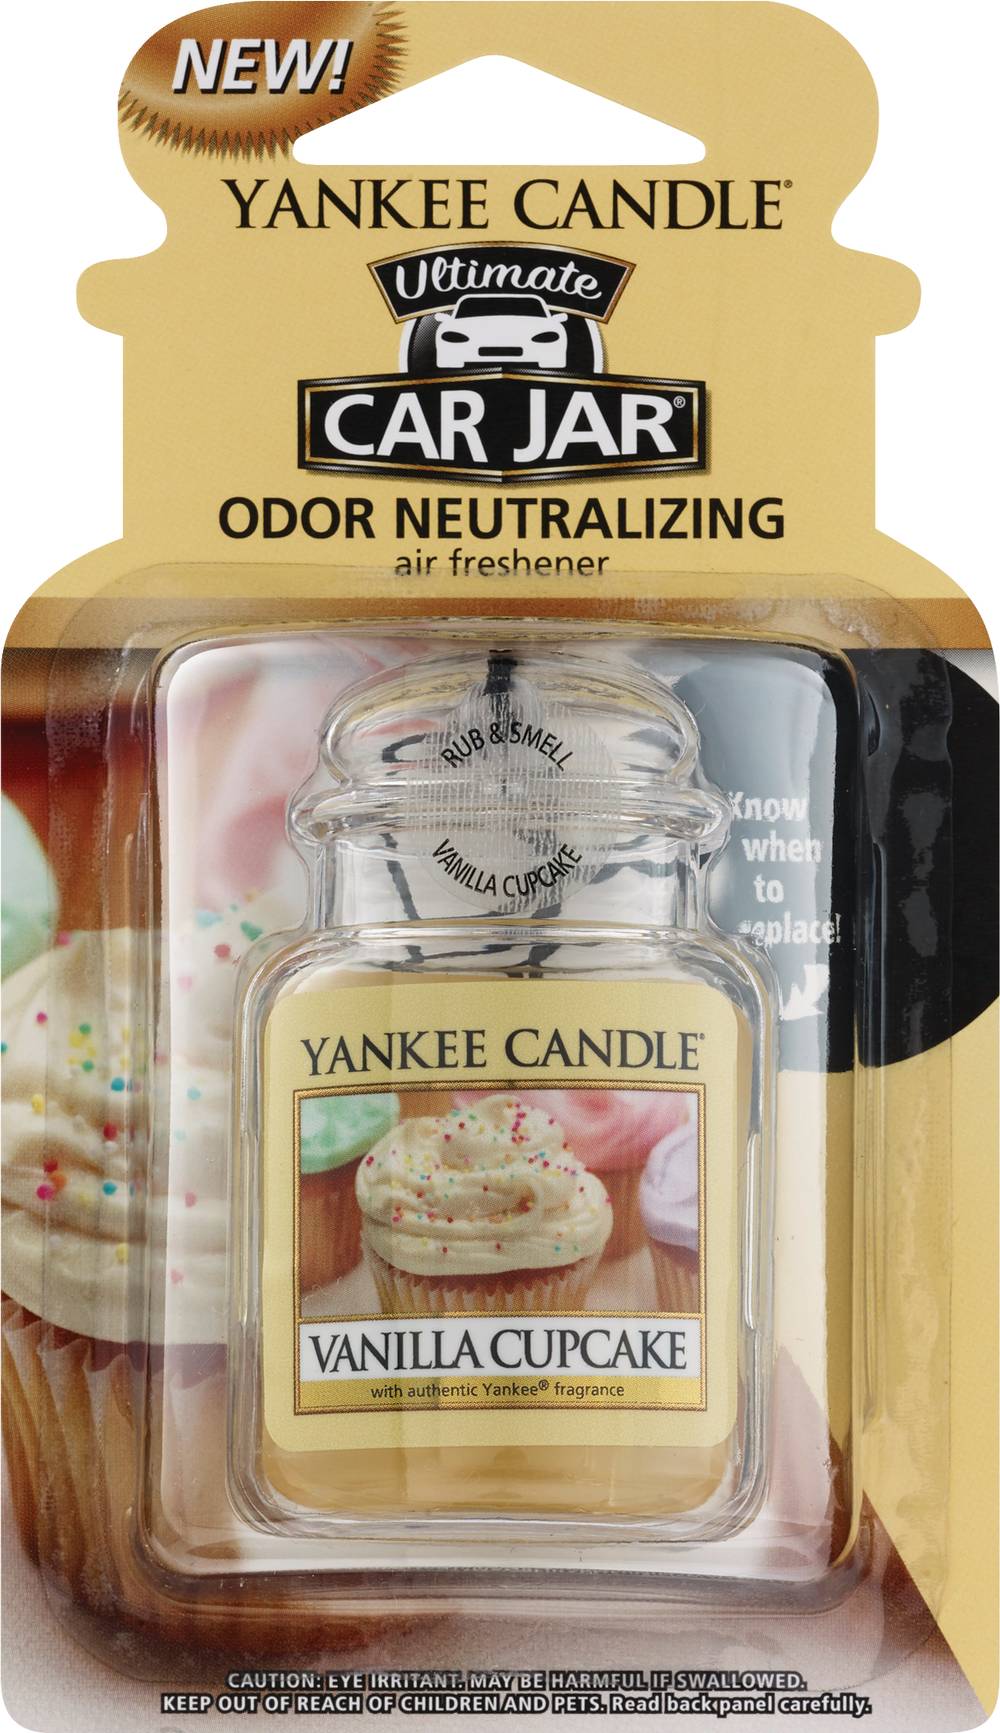 Yankee Candle Car Jar Ultimate Odor Neutralizing Air Freshener, Vanilla Cupcake